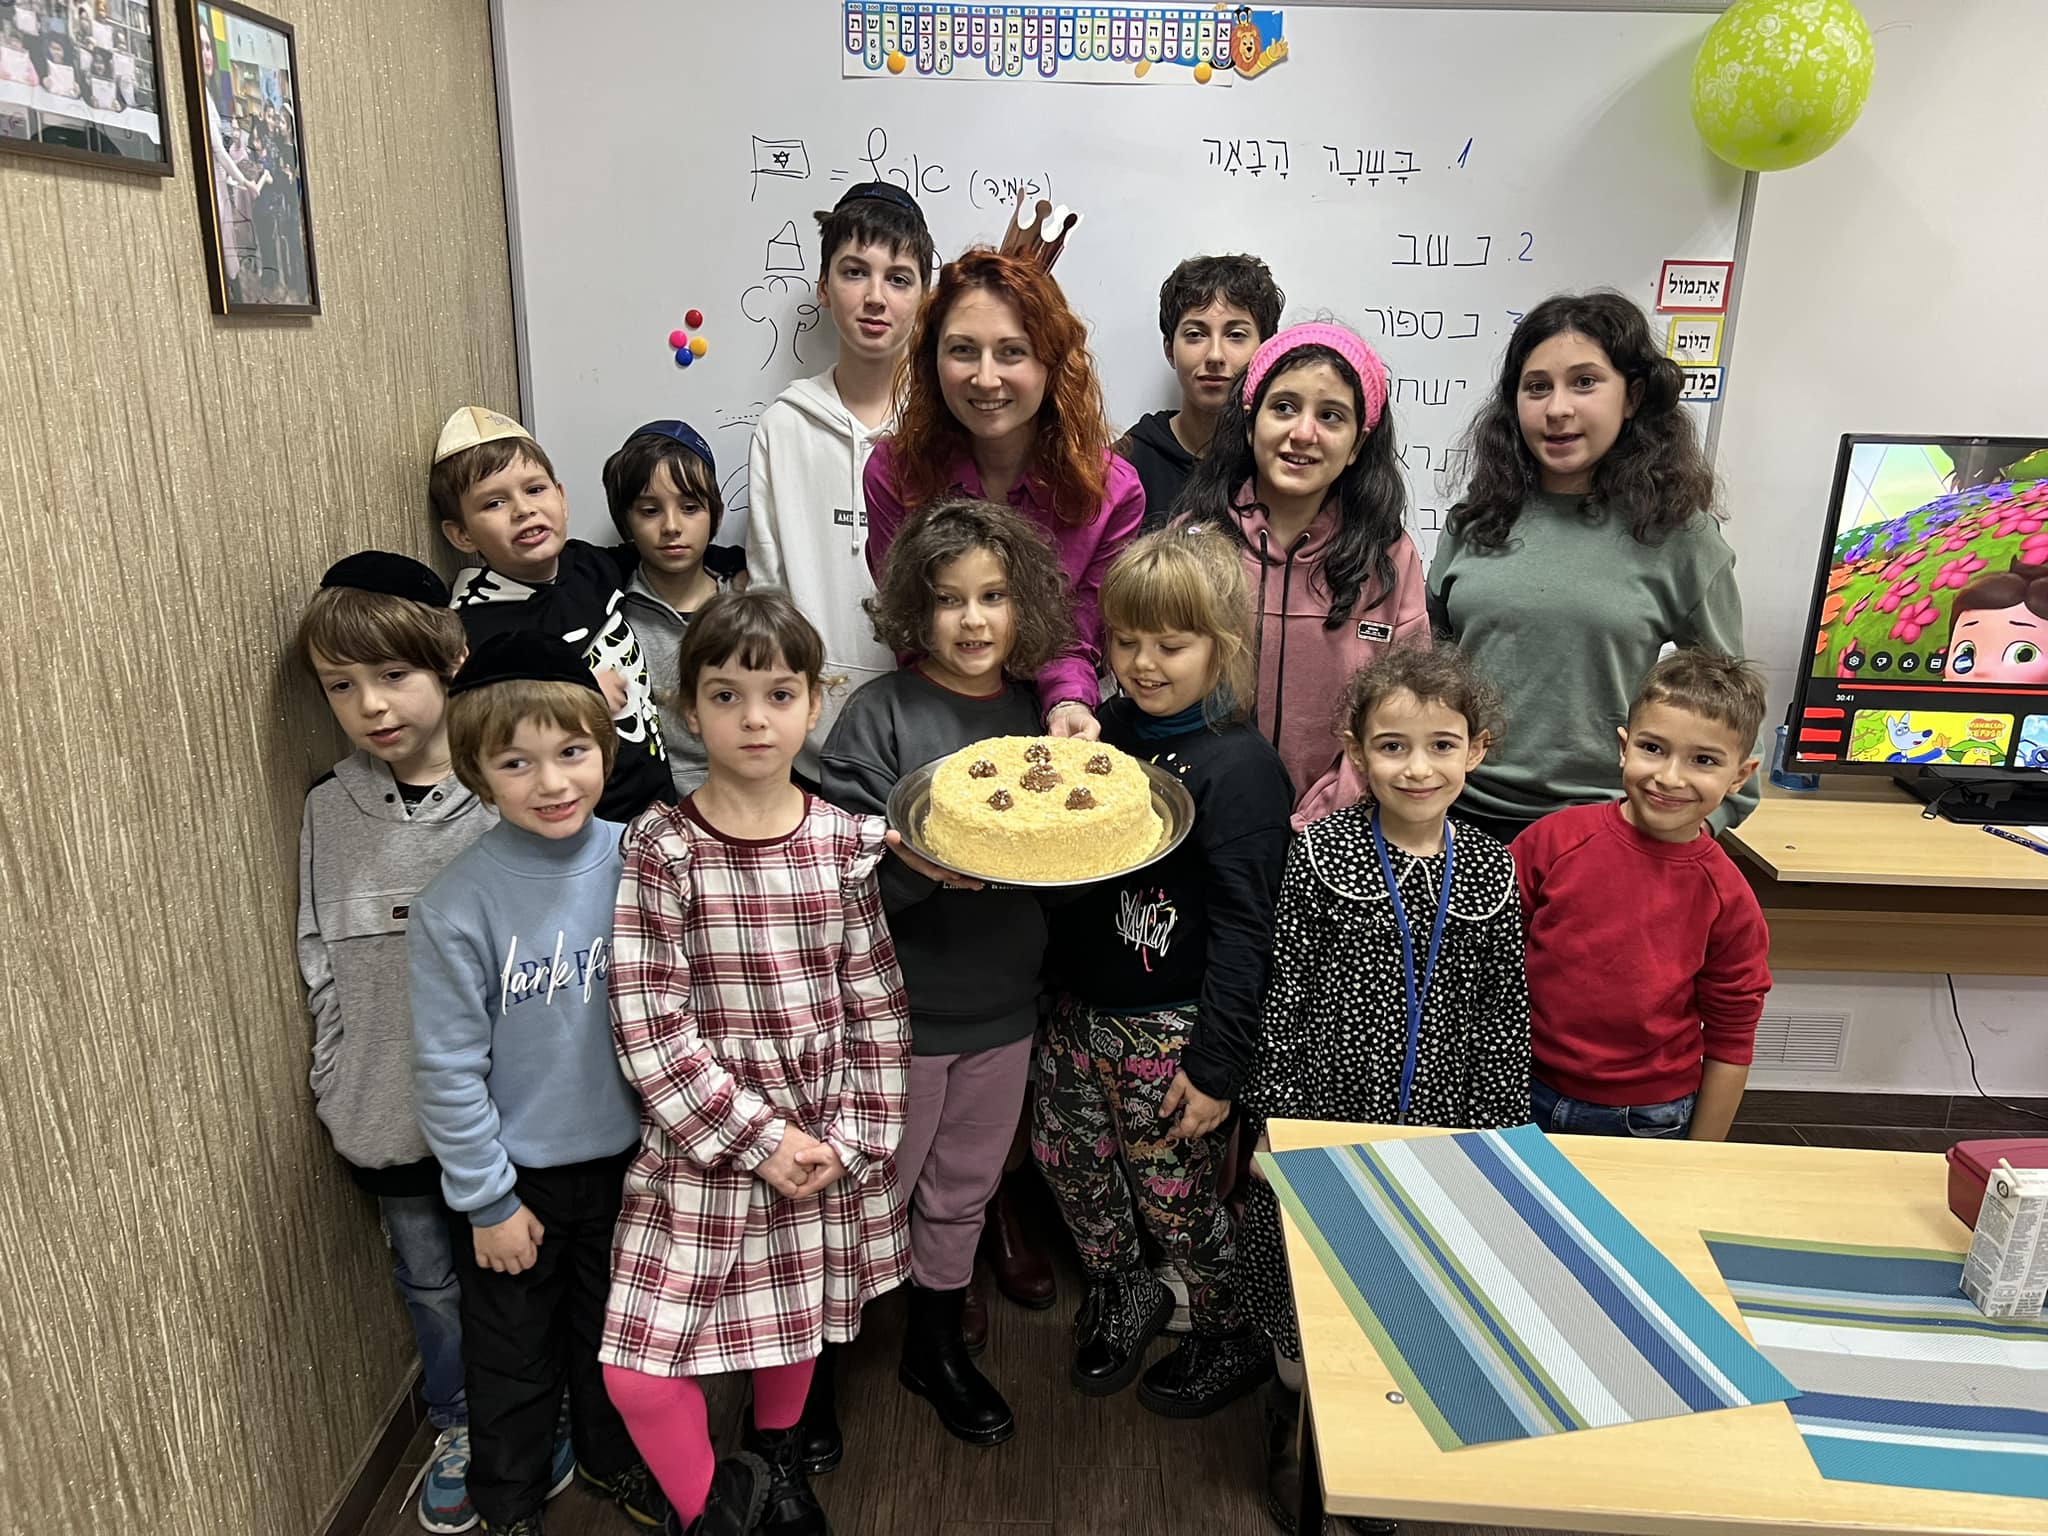 Natalya Yocheved Melnichenko’s birthday